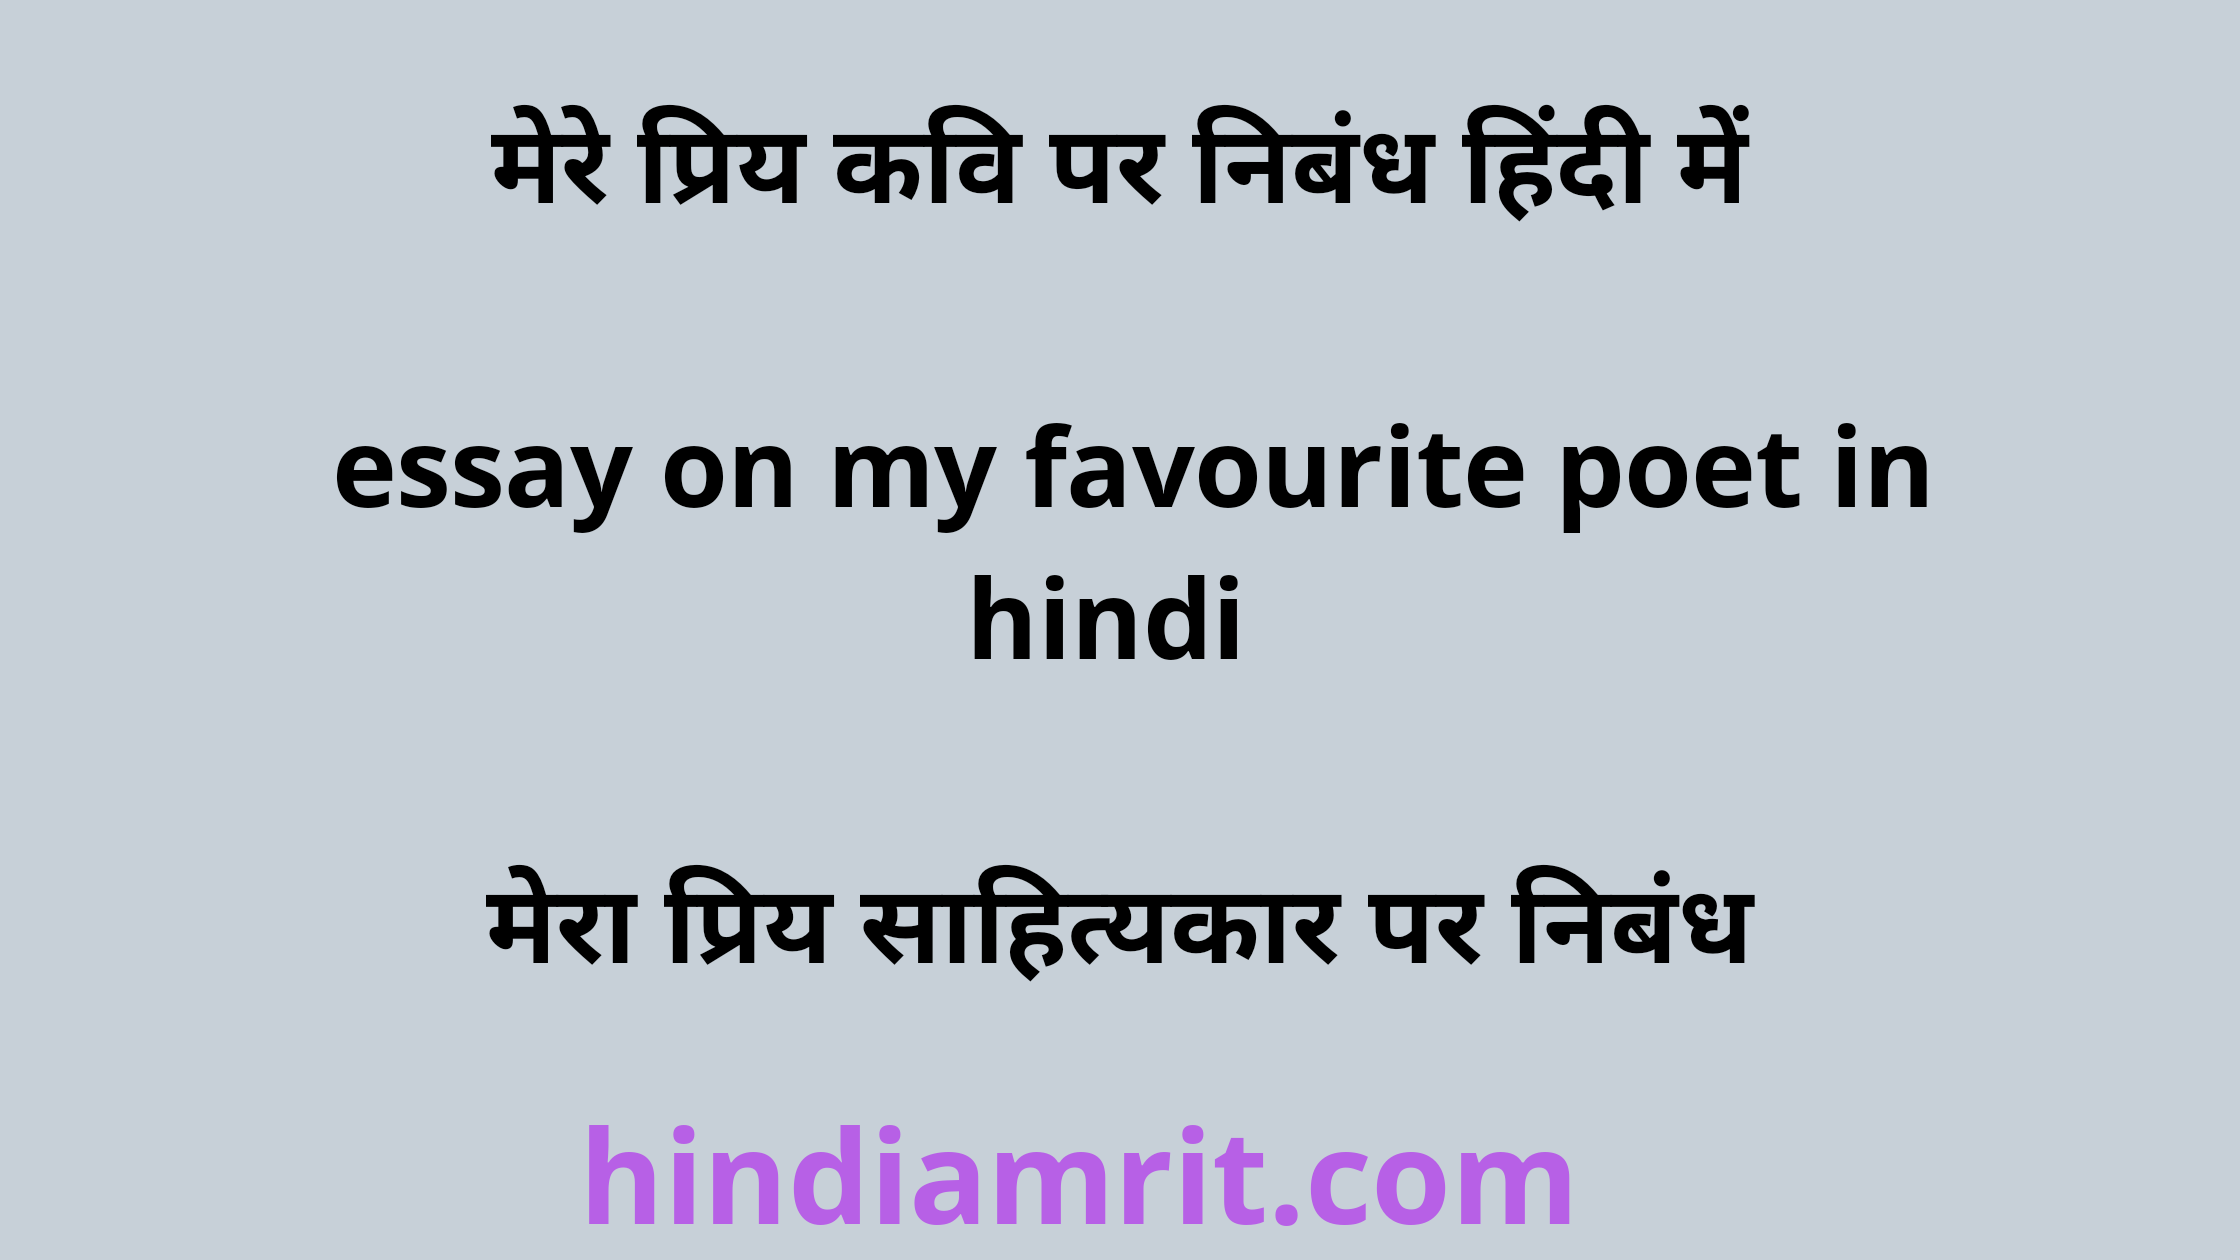 poet essay writing in hindi